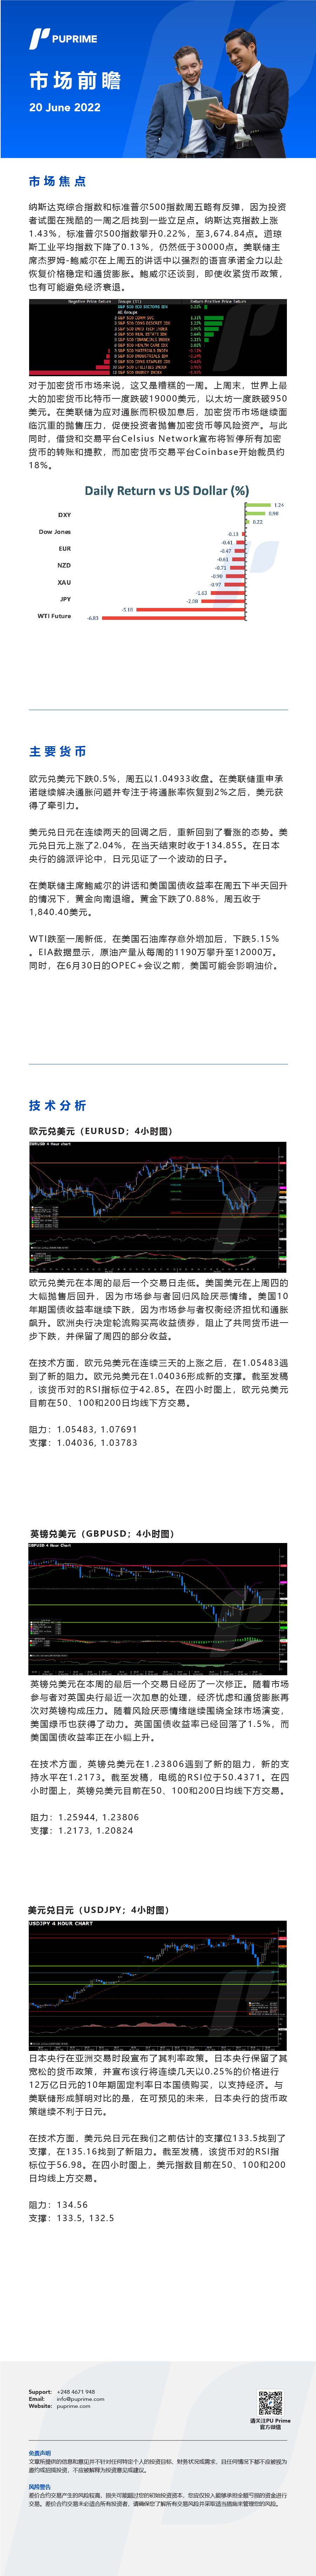 20062022 Daily Market Analysis__CHN.jpg